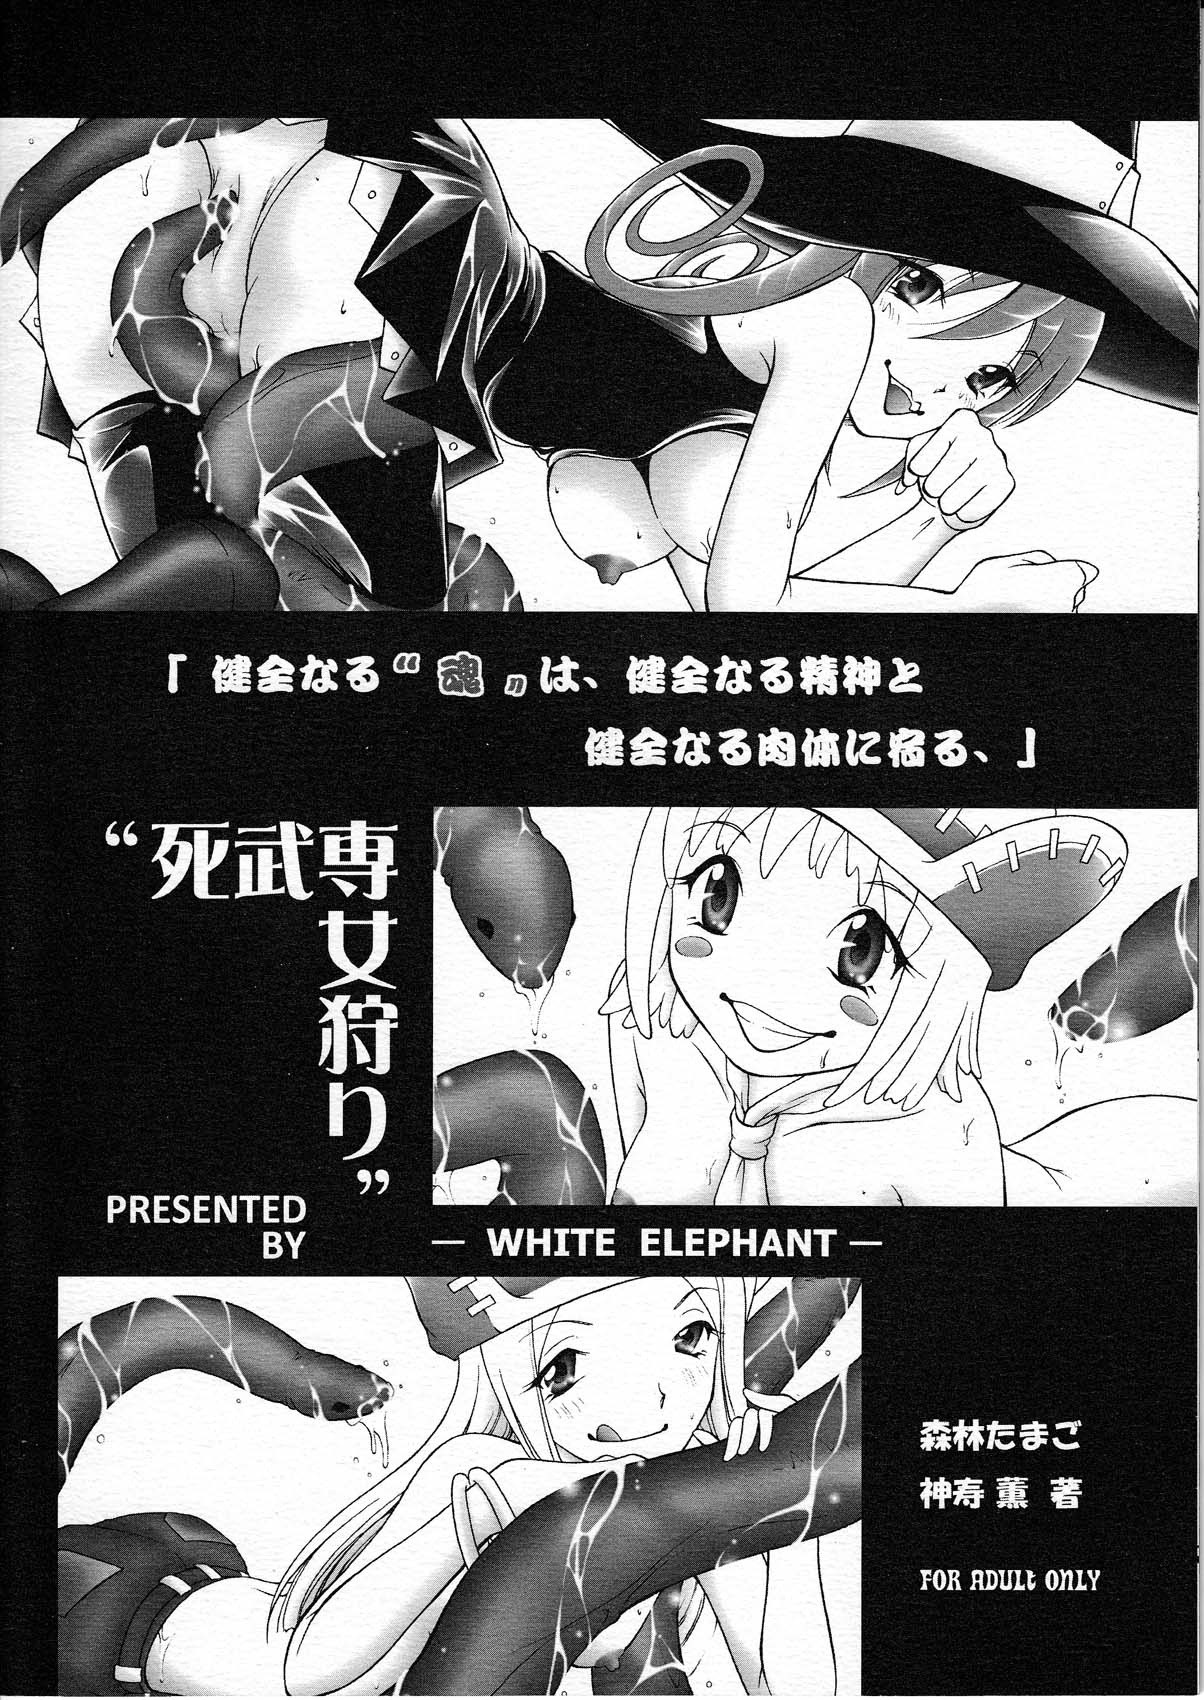 Shibusen Girl Hunting hentai manga picture 2